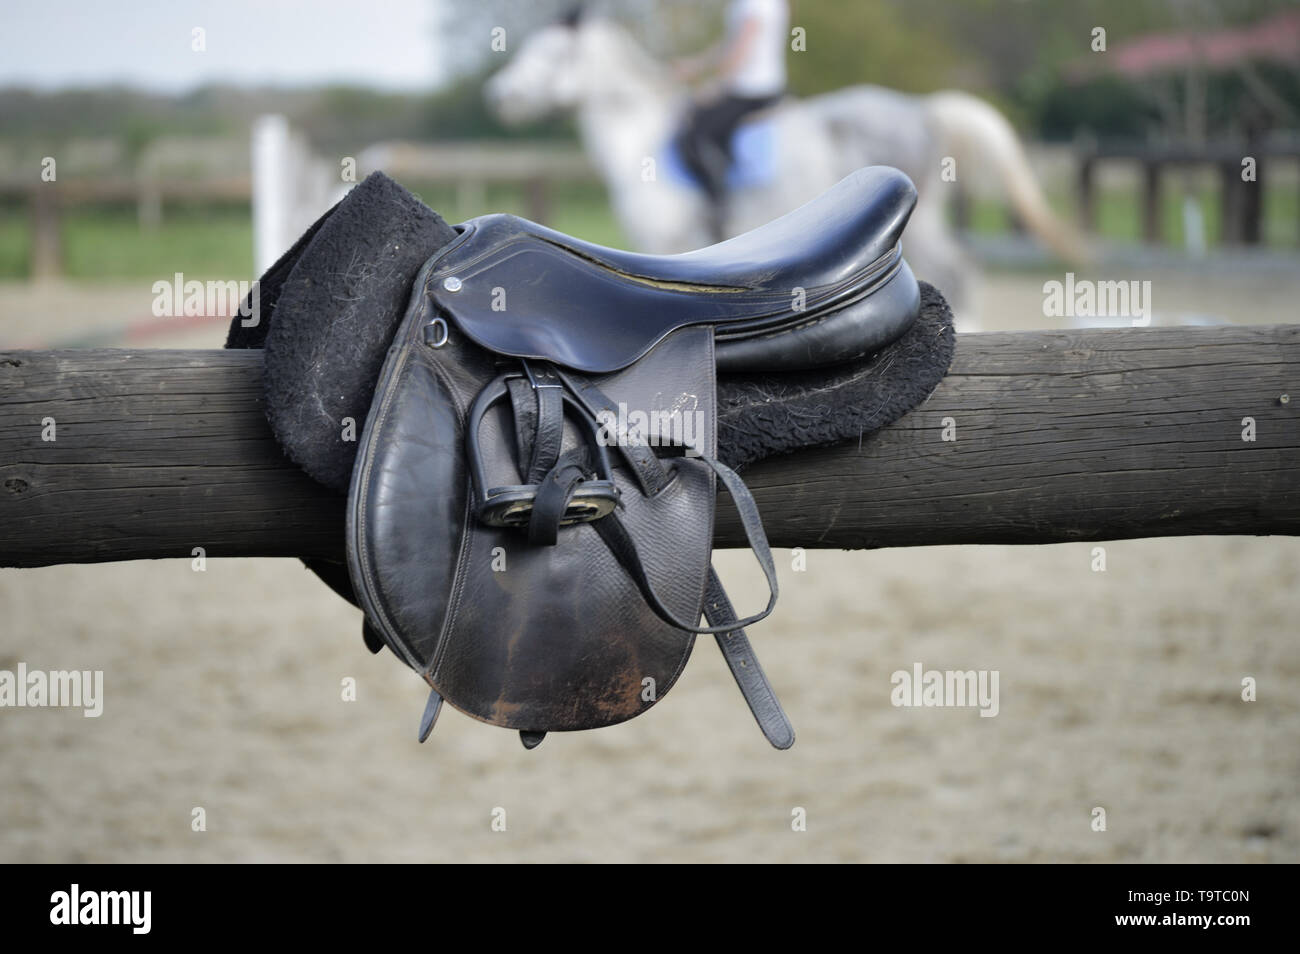 Horse saddle on wooden round beam, horse riding background Stock Photo